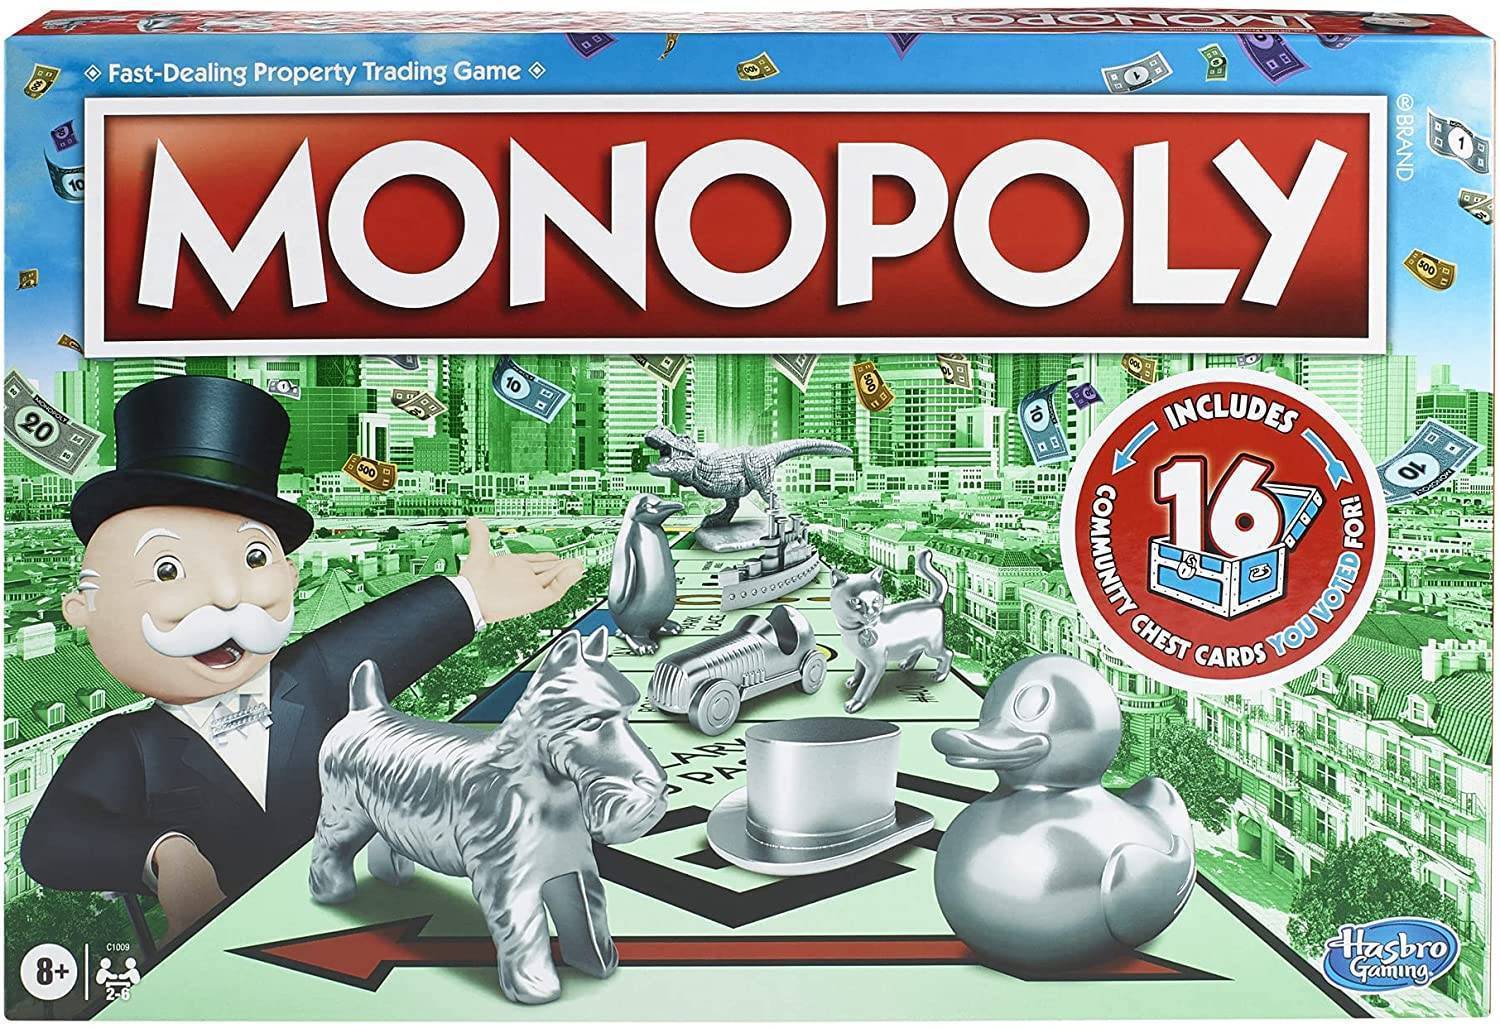 Monopoly base game box